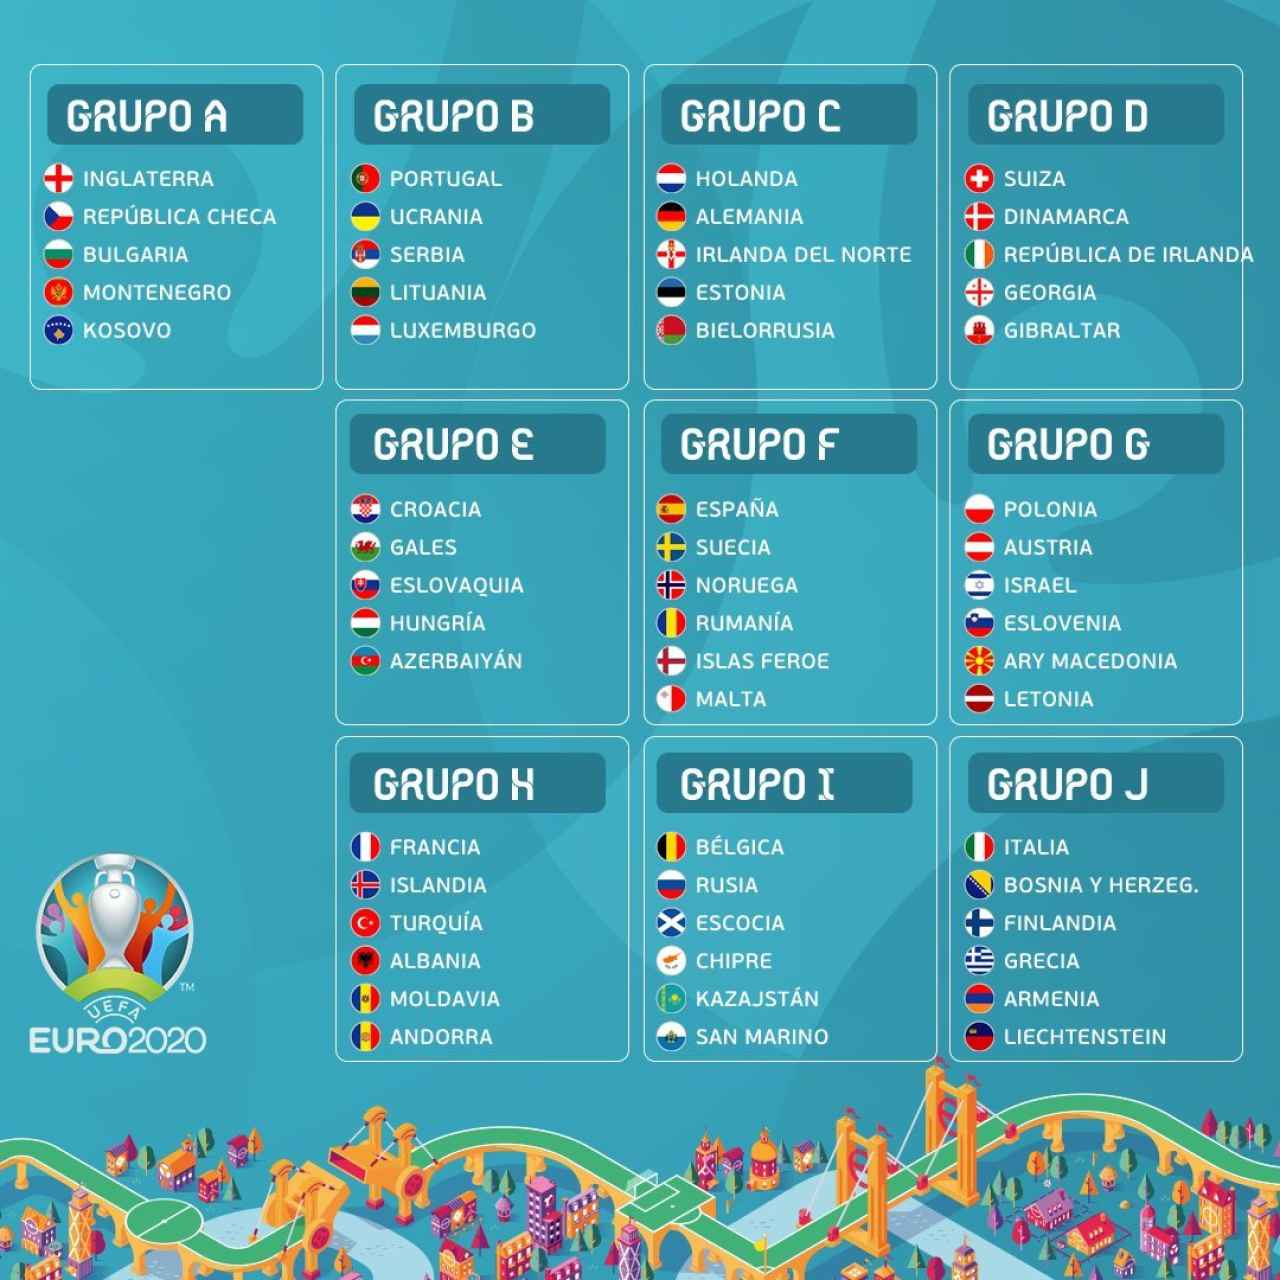 Grupos Eurocopa 2020